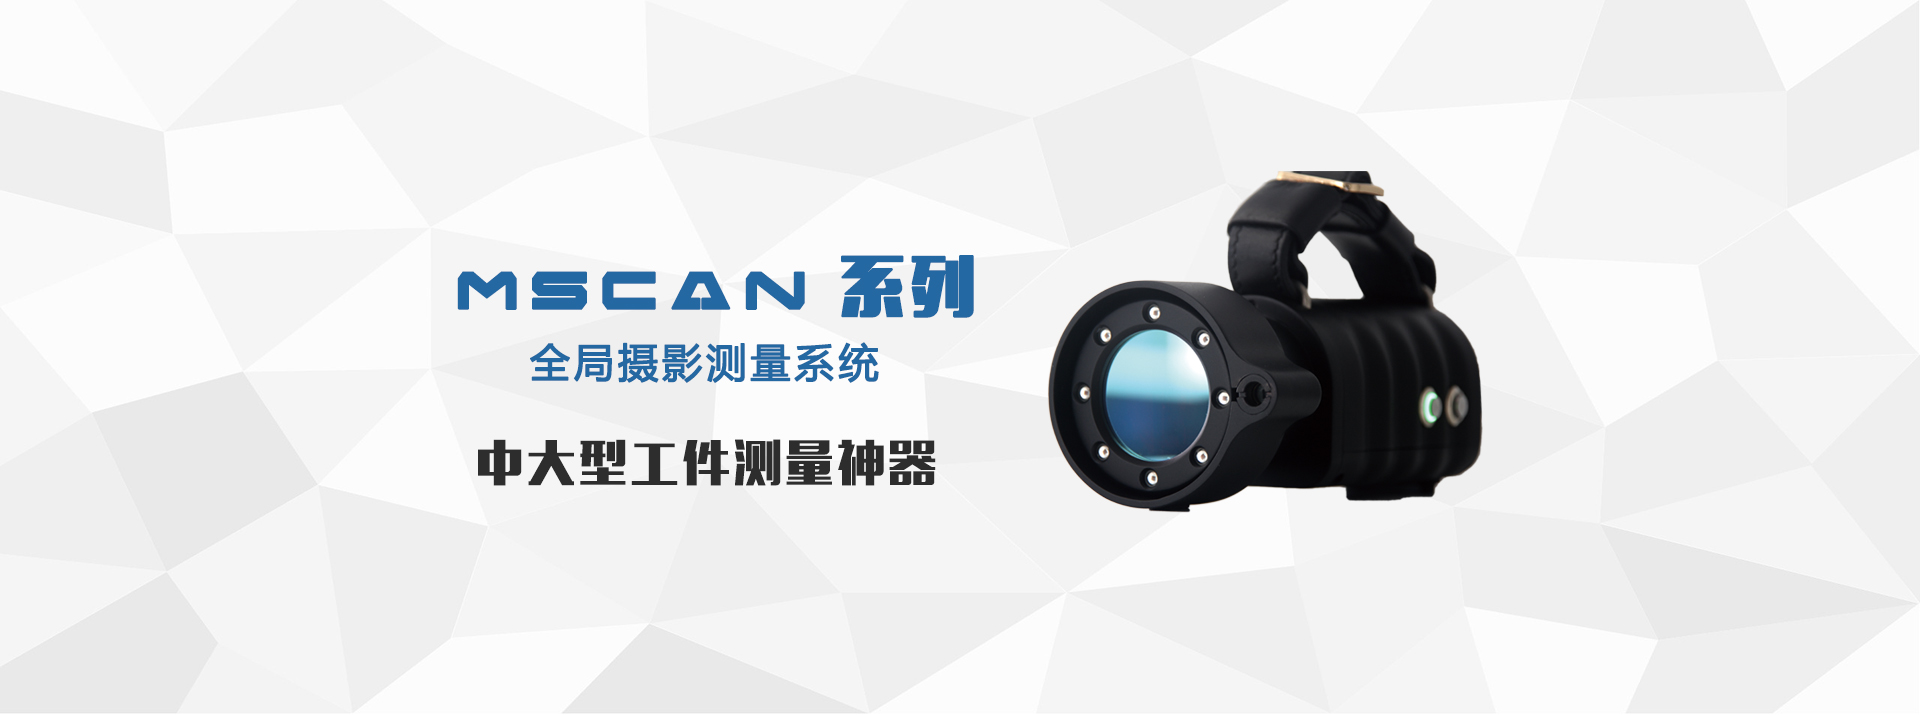 全局摄影测量系统MSCAN